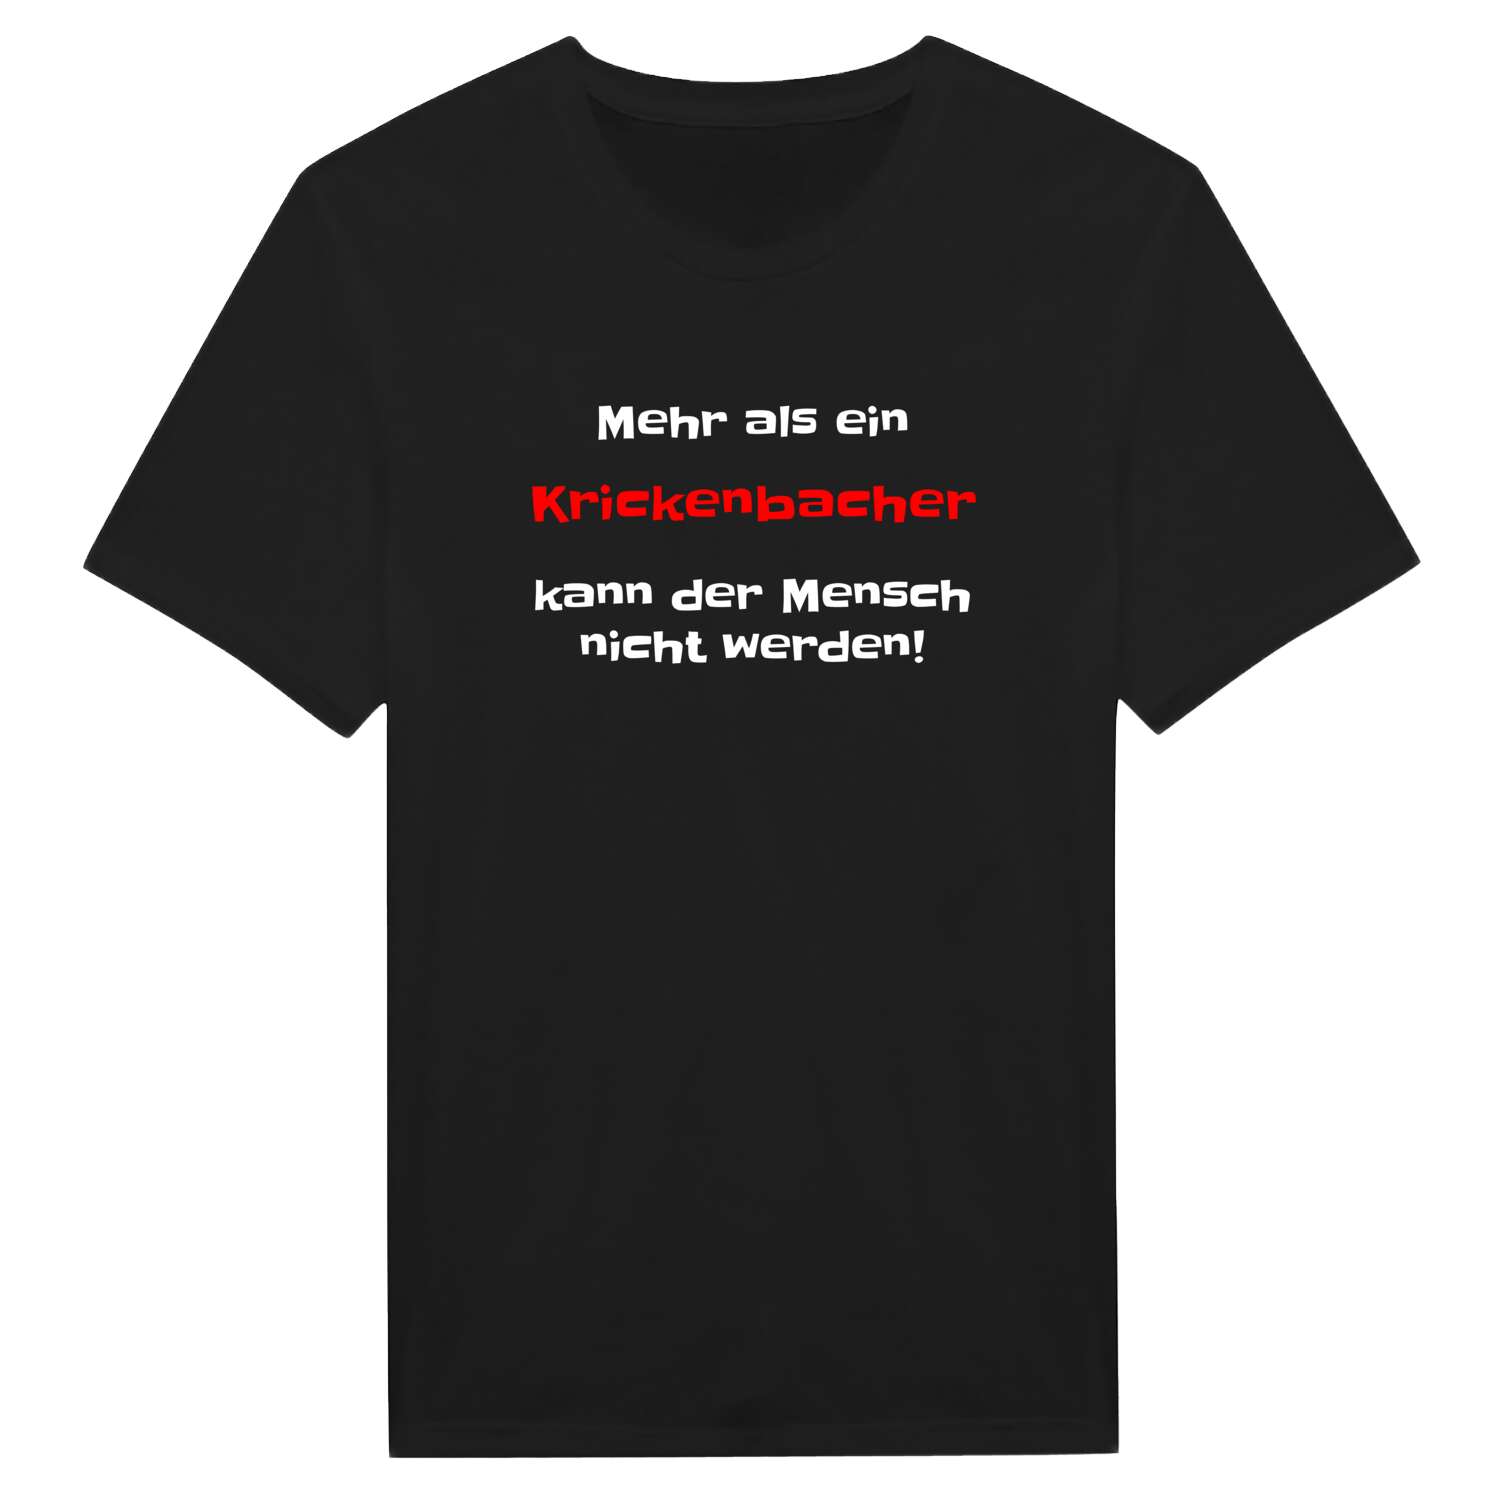 Krickenbach T-Shirt »Mehr als ein«